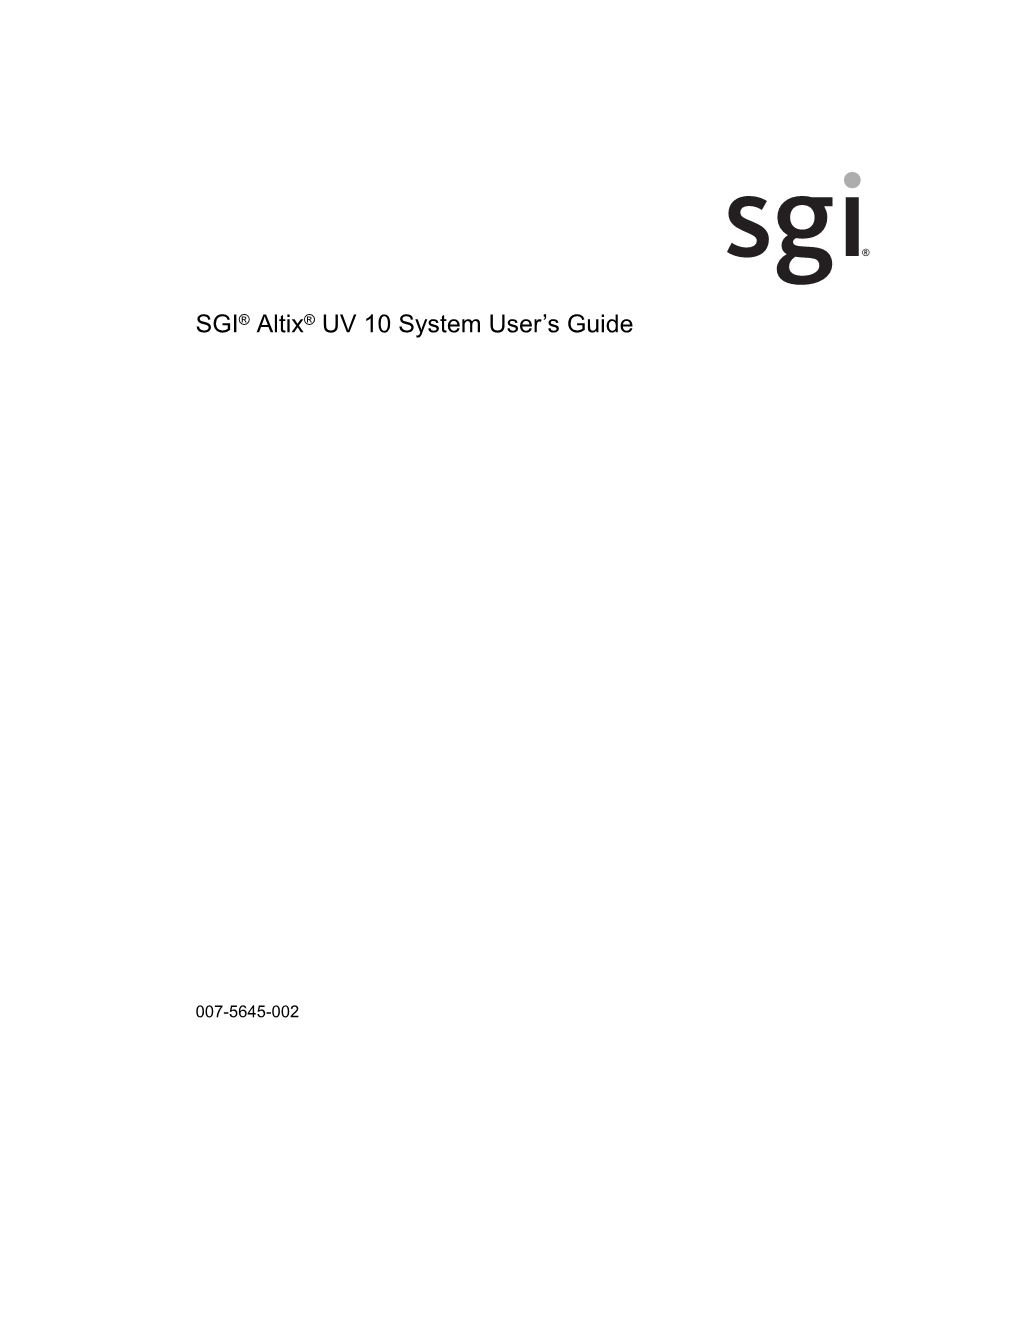 SGI® Altix® UV 10 System User's Guide